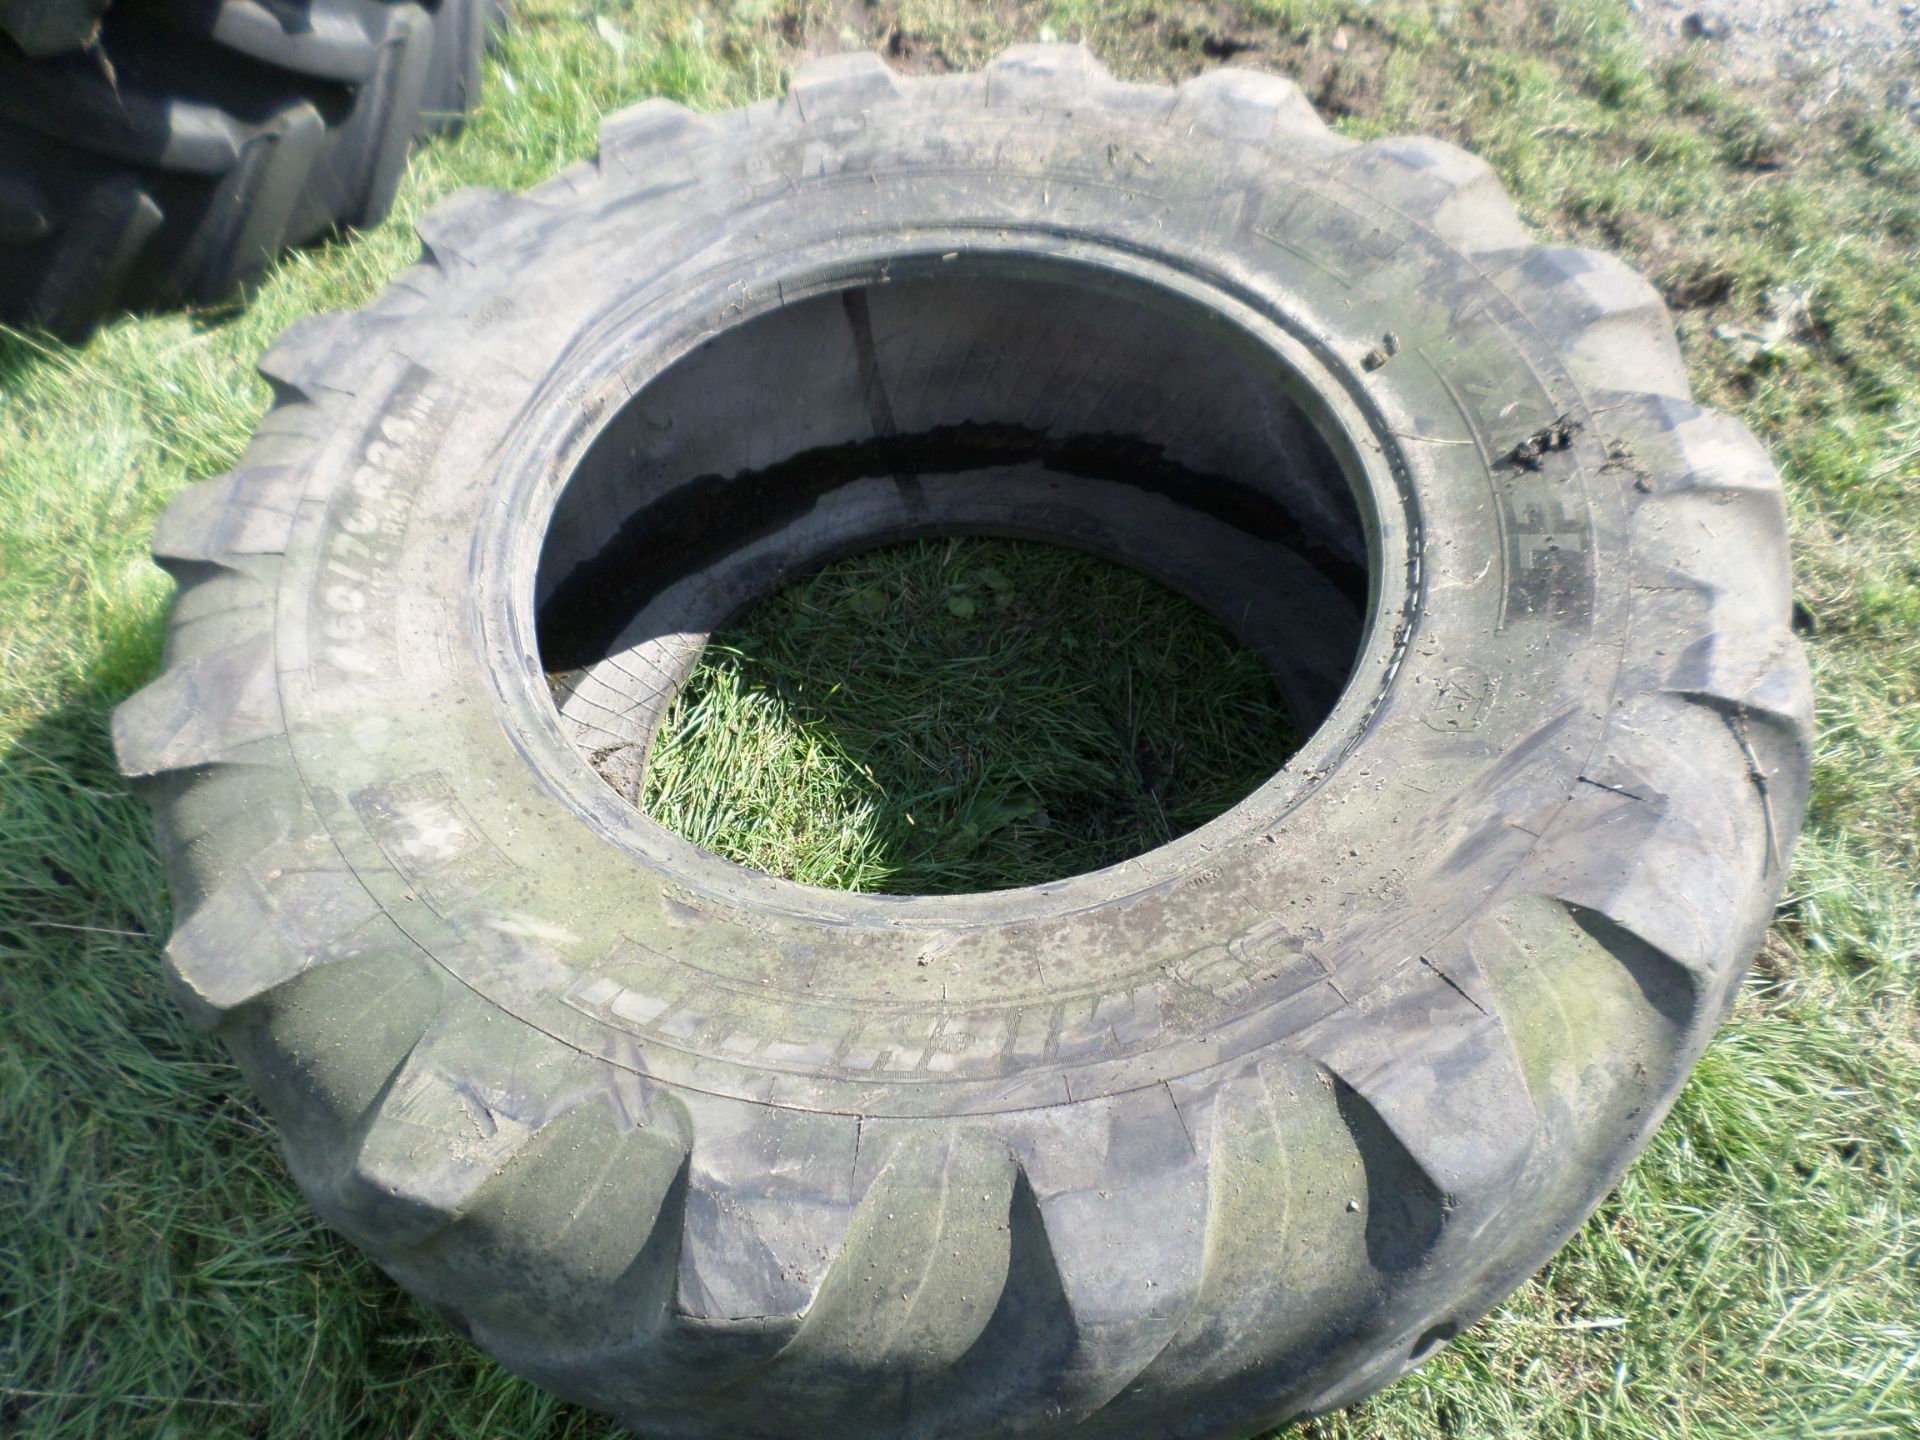 1 teleporter tyres 17.5/24 NO VAT - Image 2 of 2